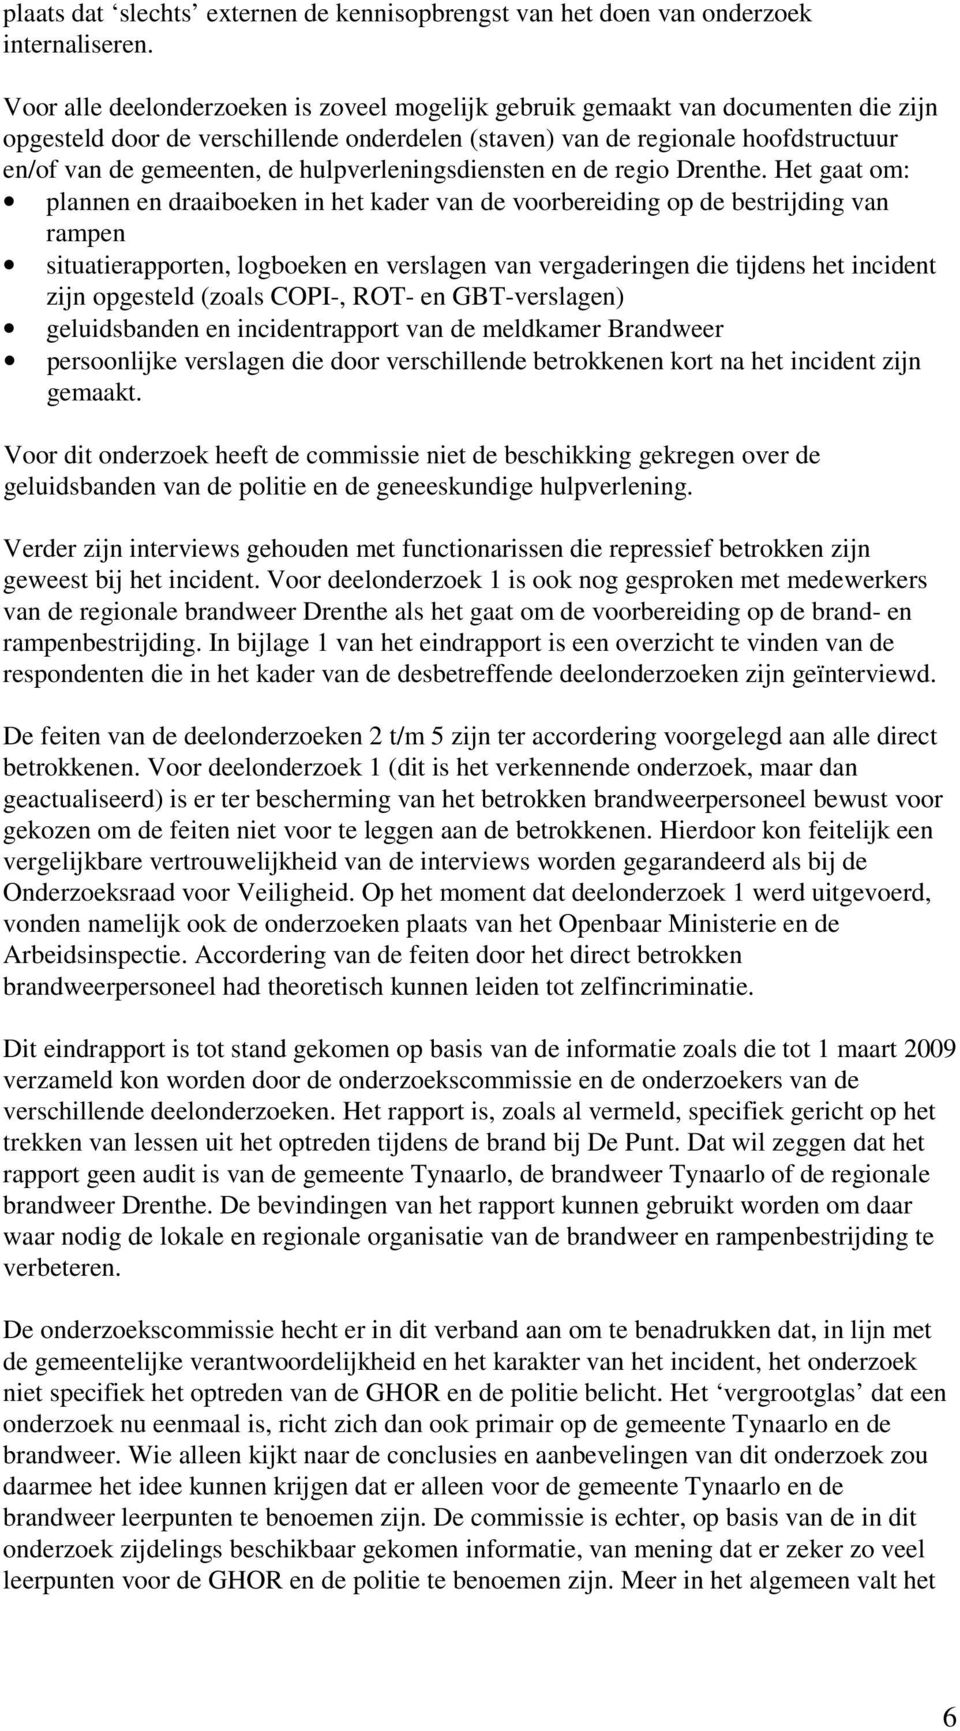 hulpverleningsdiensten en de regio Drenthe.